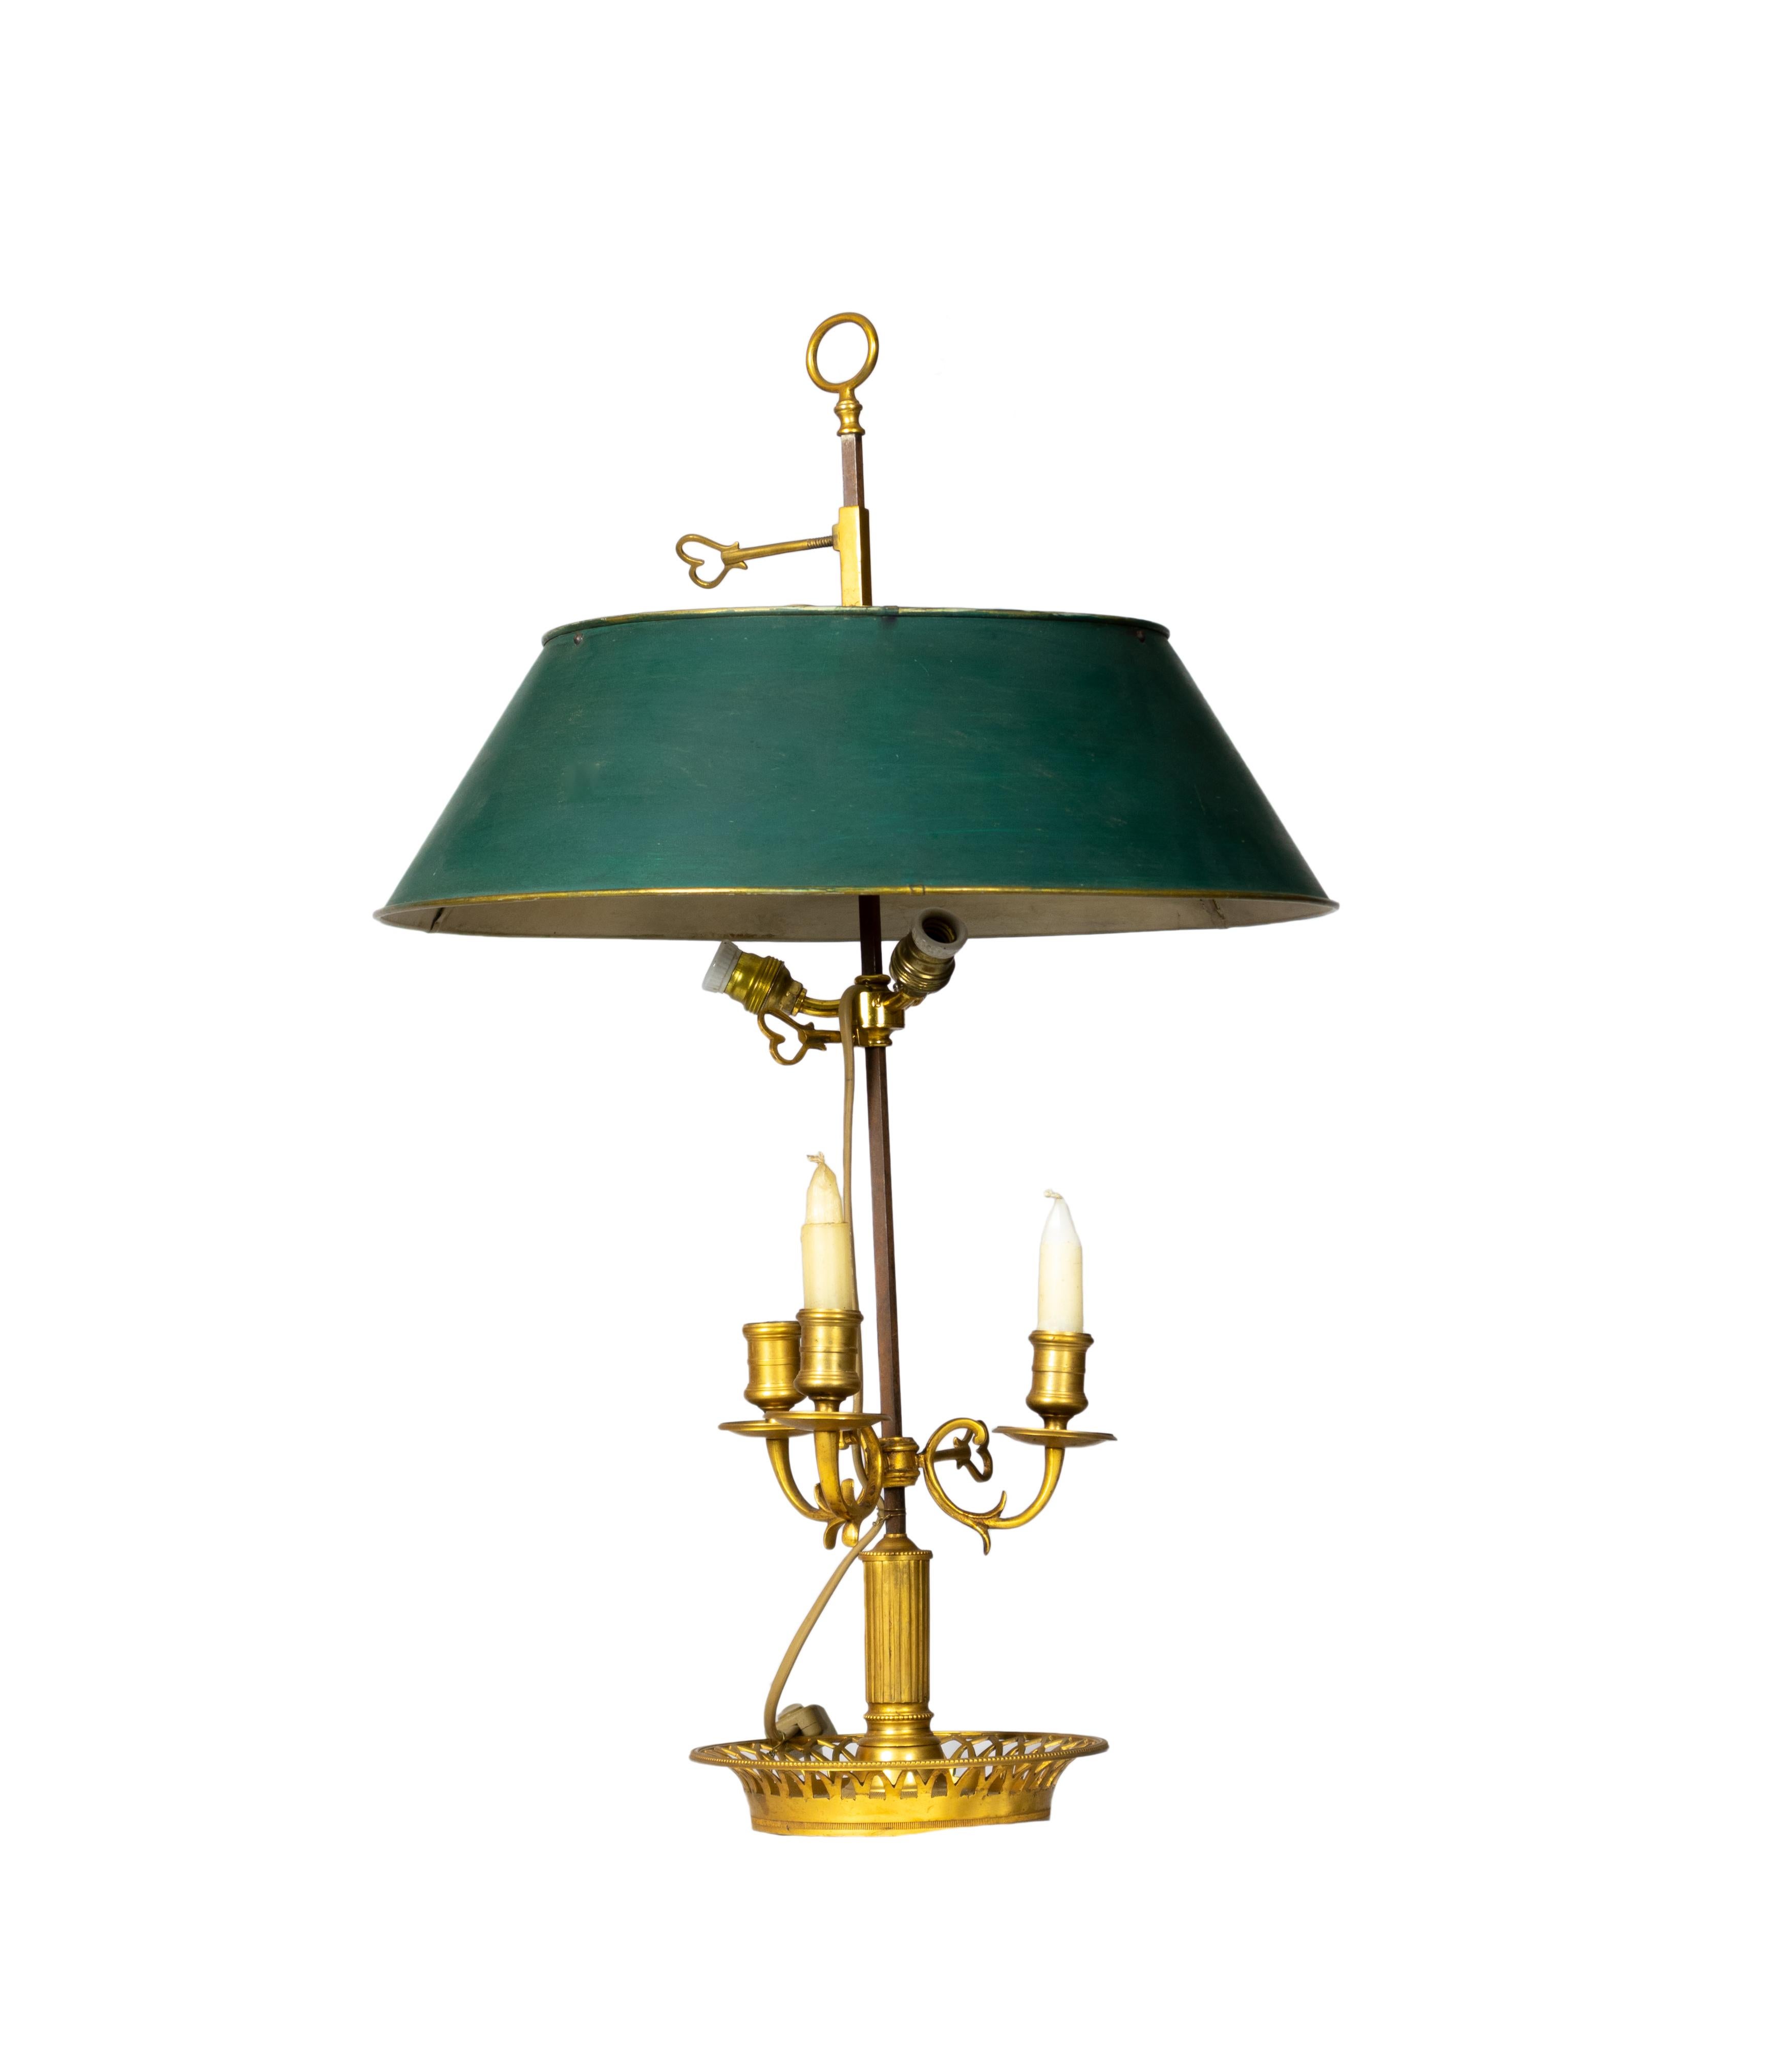 Eine Bouillotte-Lampe im französischen Empire-Stil mit drei bronzenen Leuchten und einem verstellbaren Schirm wird durch einen grünen Tole-Schirm in Grüntönen ergänzt.
